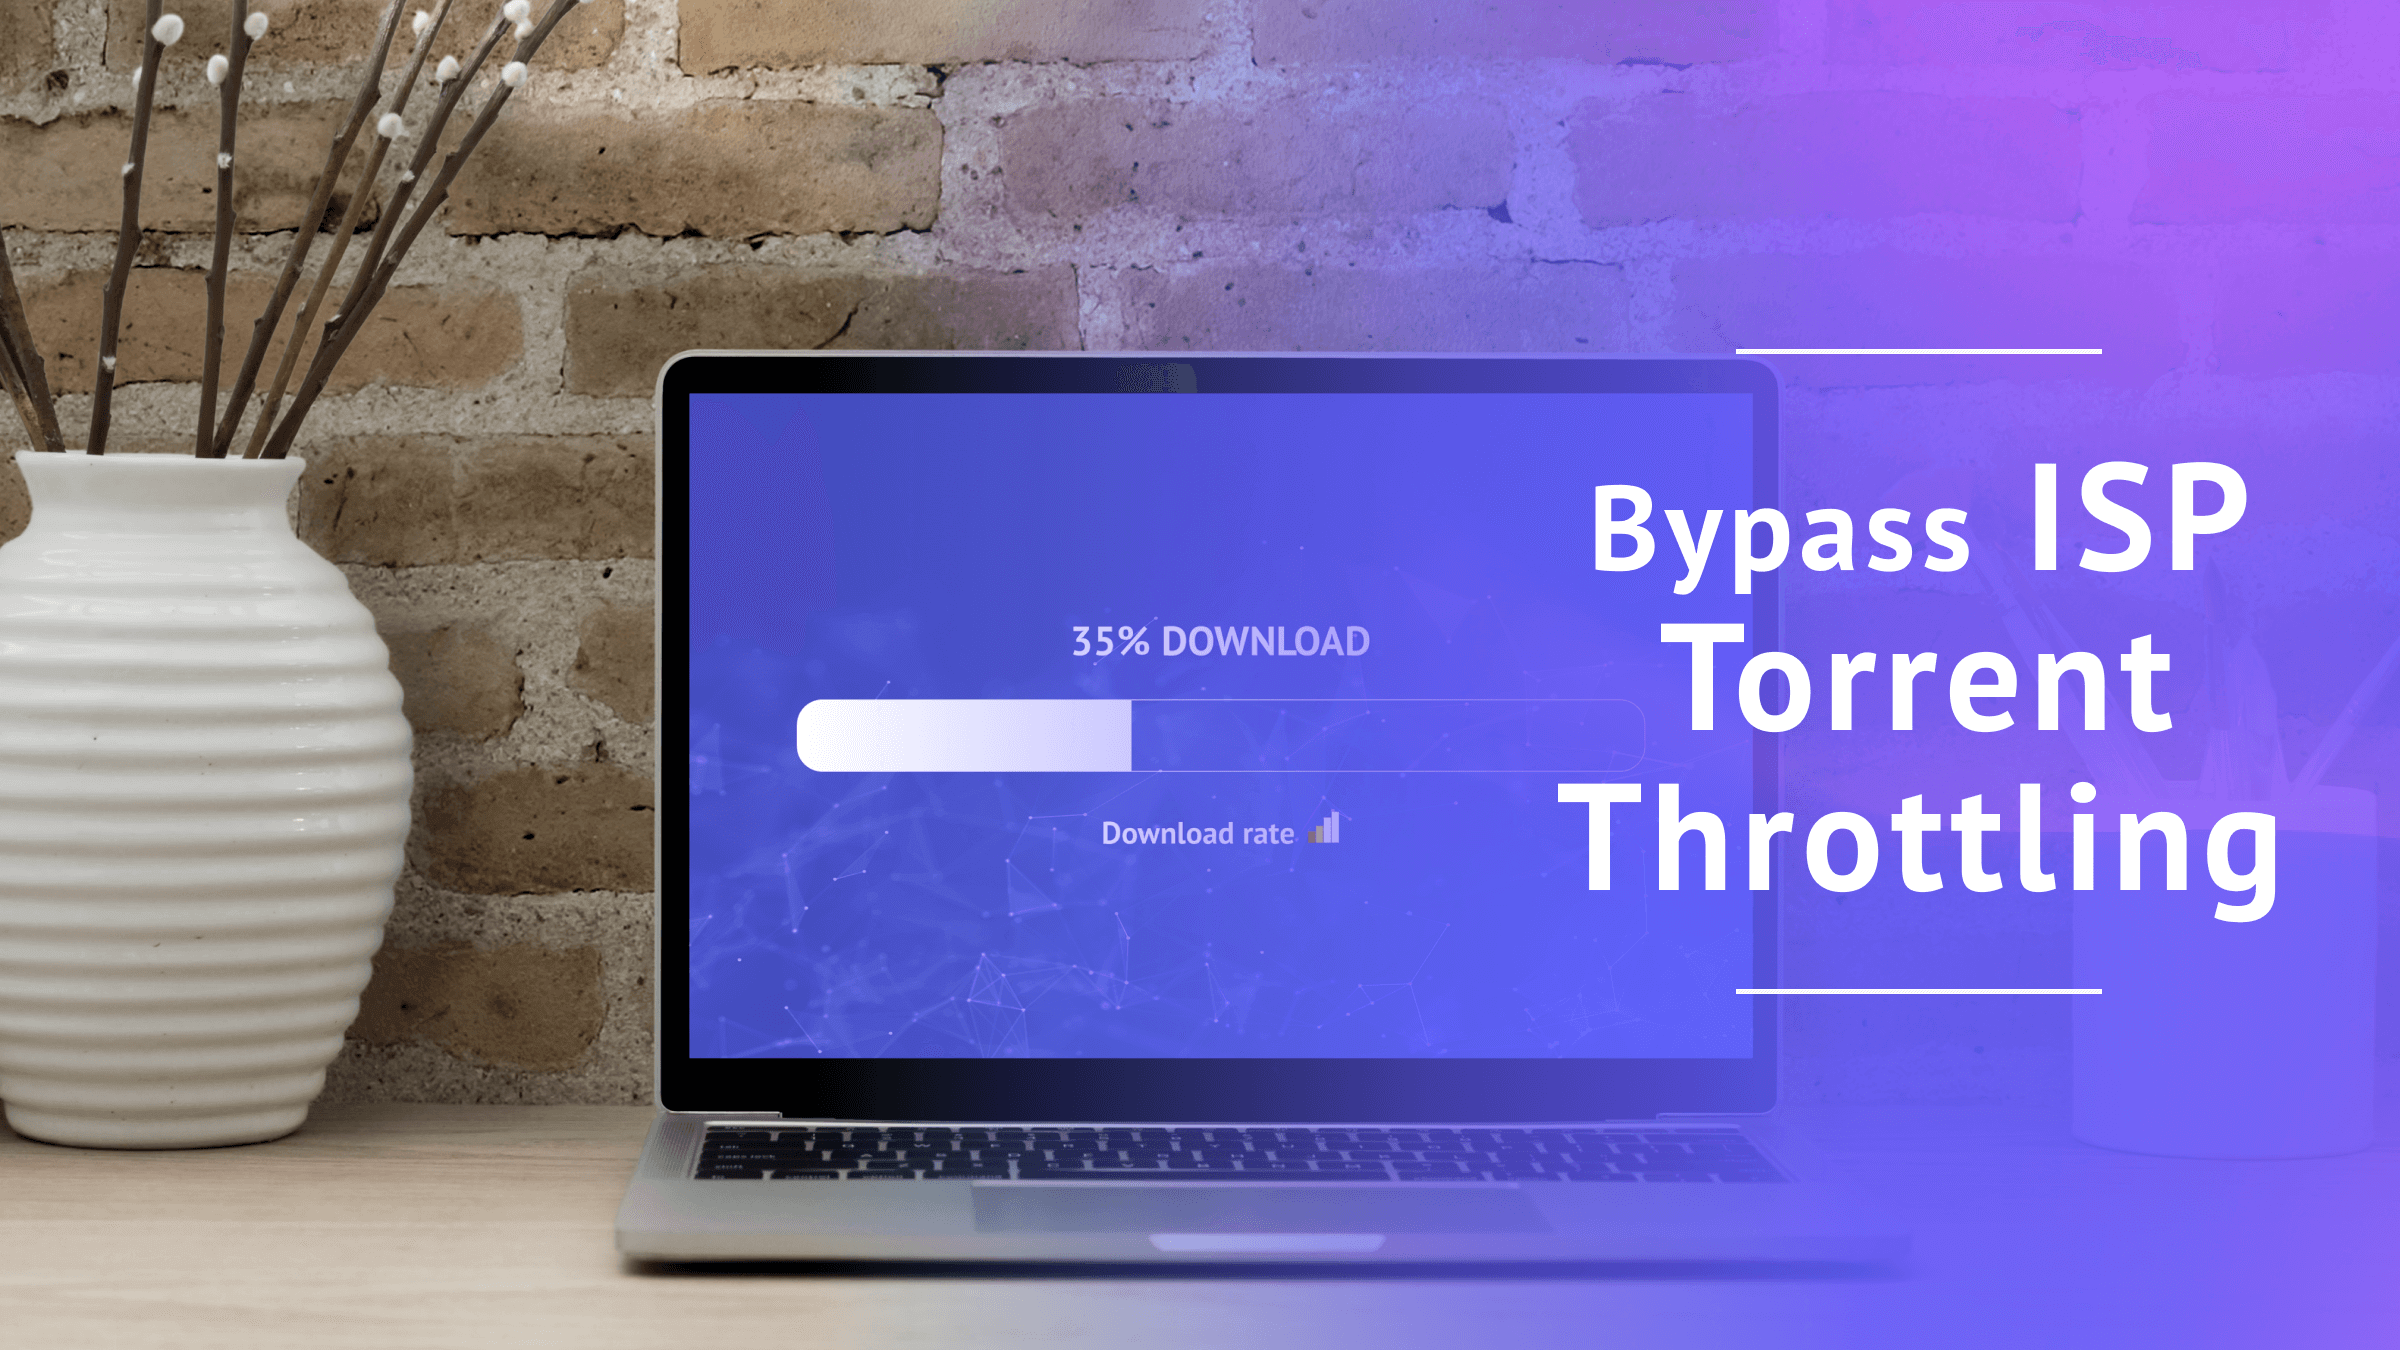 Bypass ISP Torrent Throttling